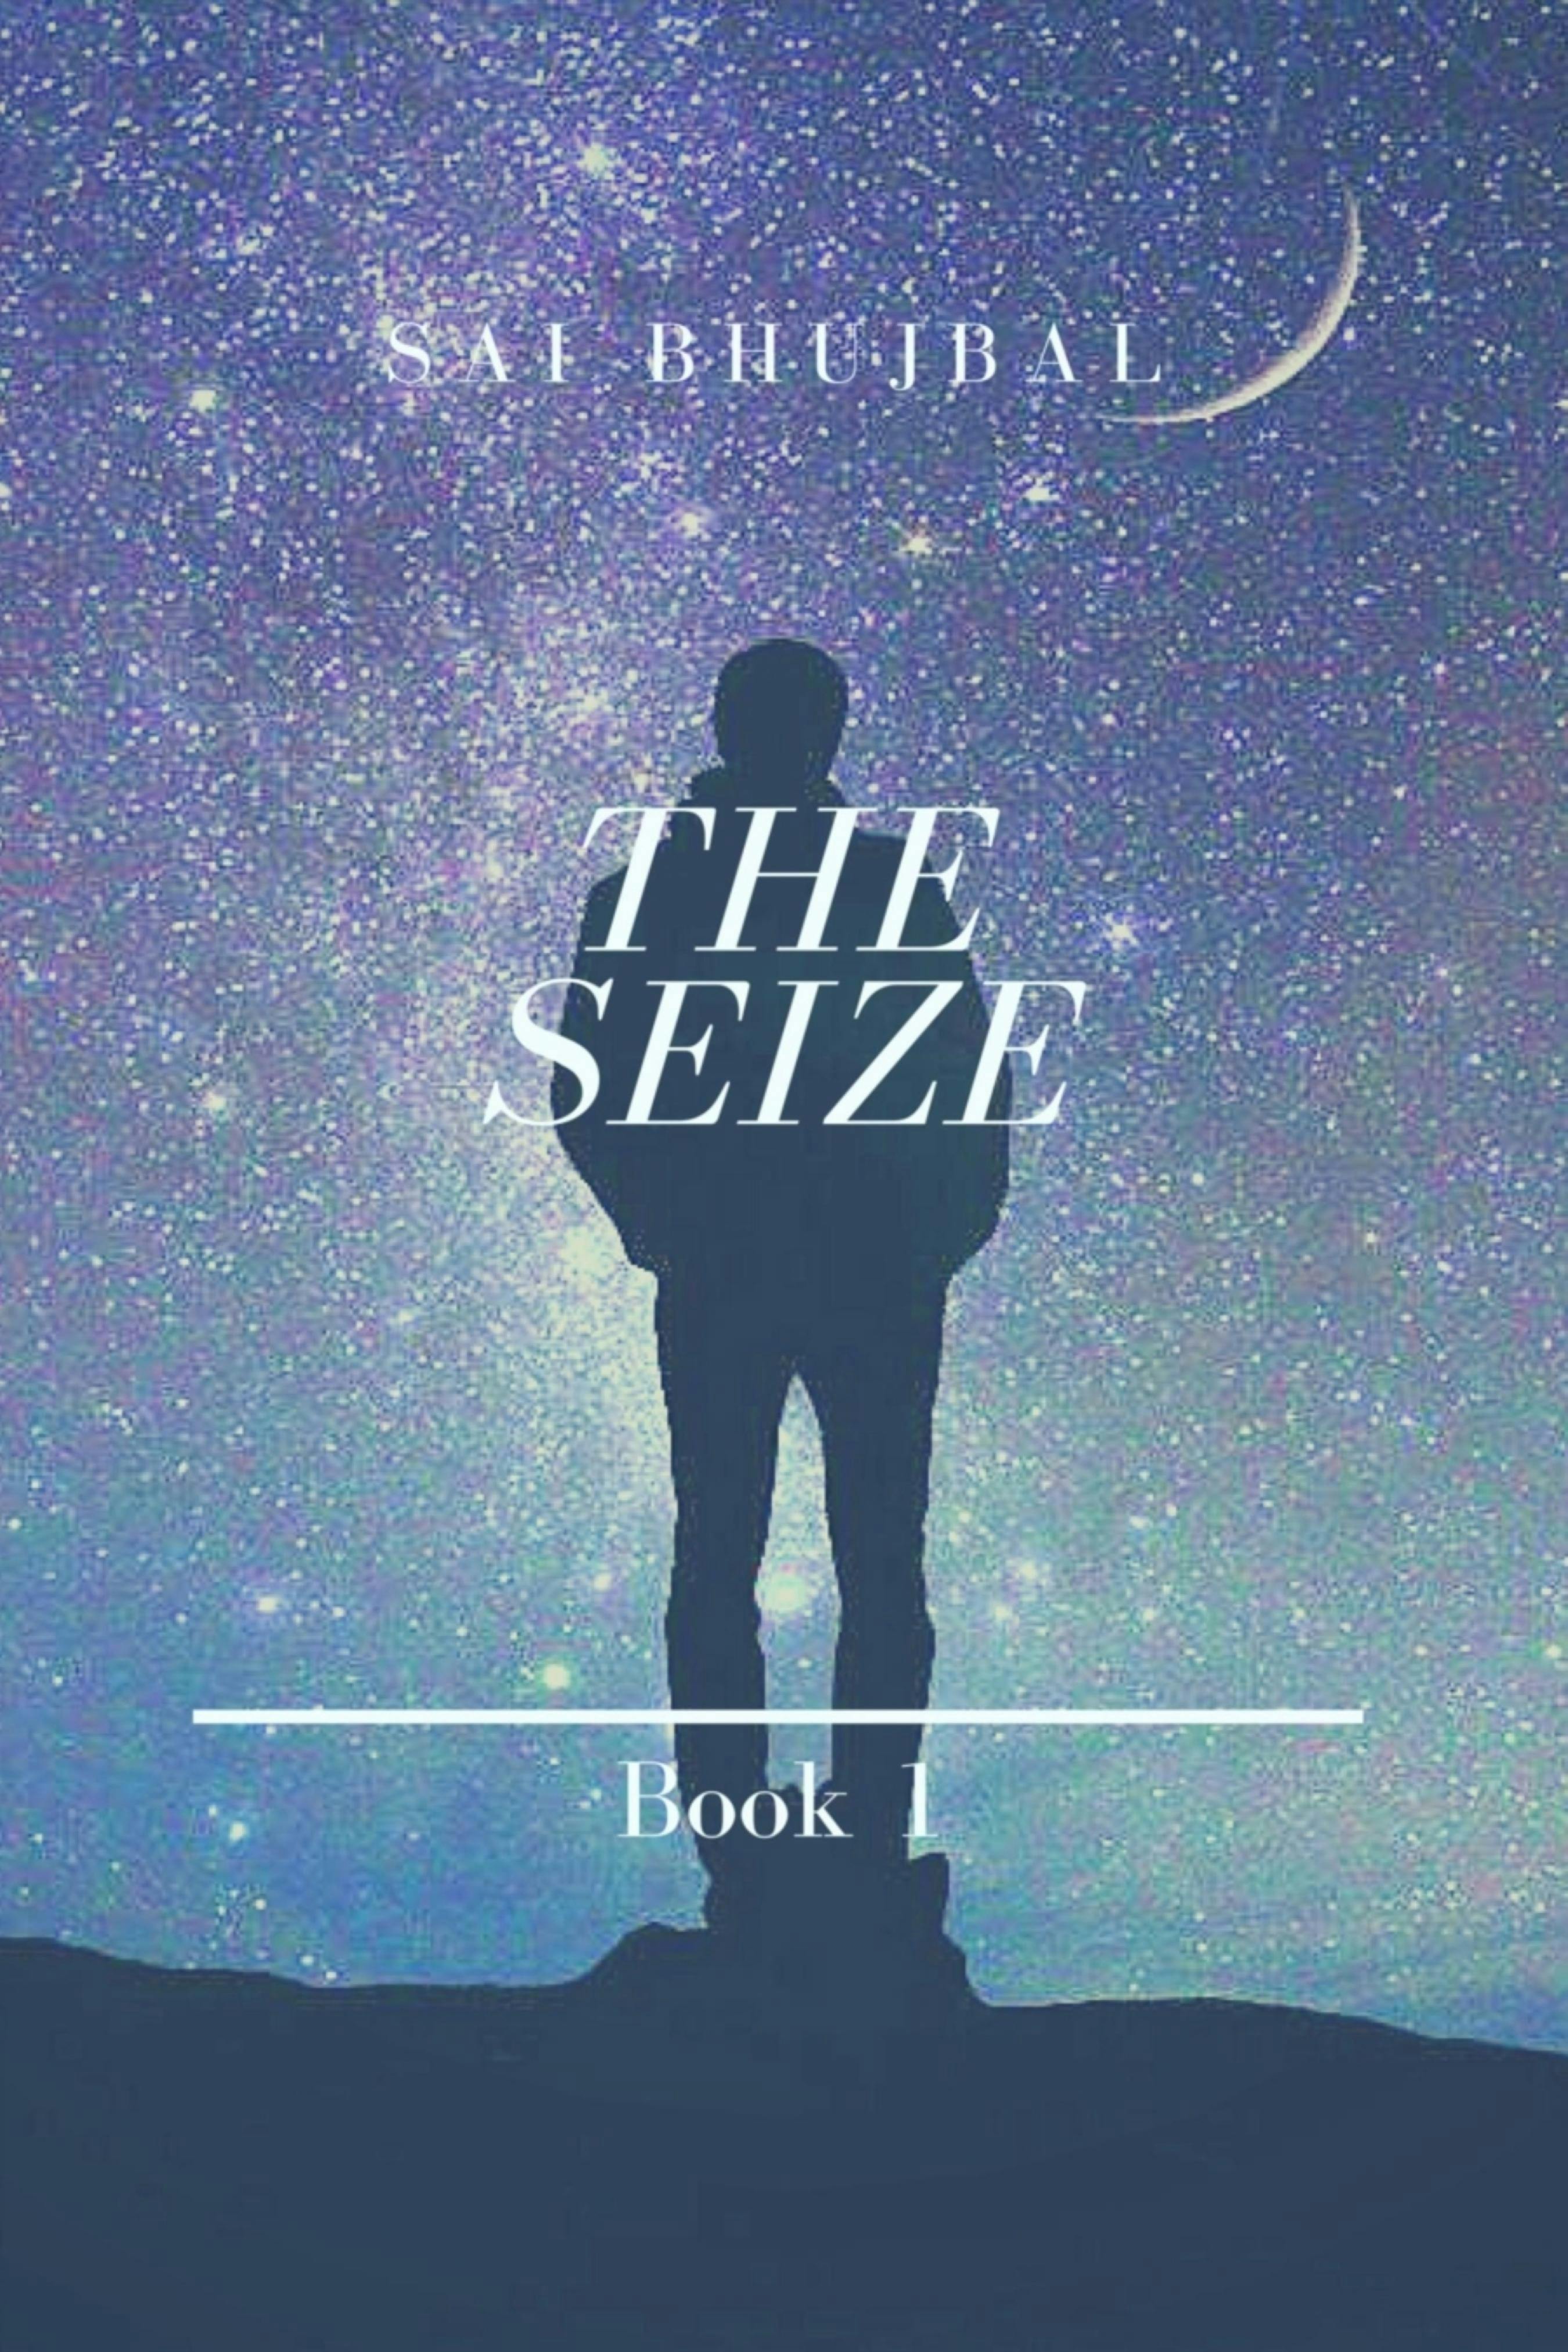 The Seize: Book 1 - Bhujbal, Sai Bhujbal